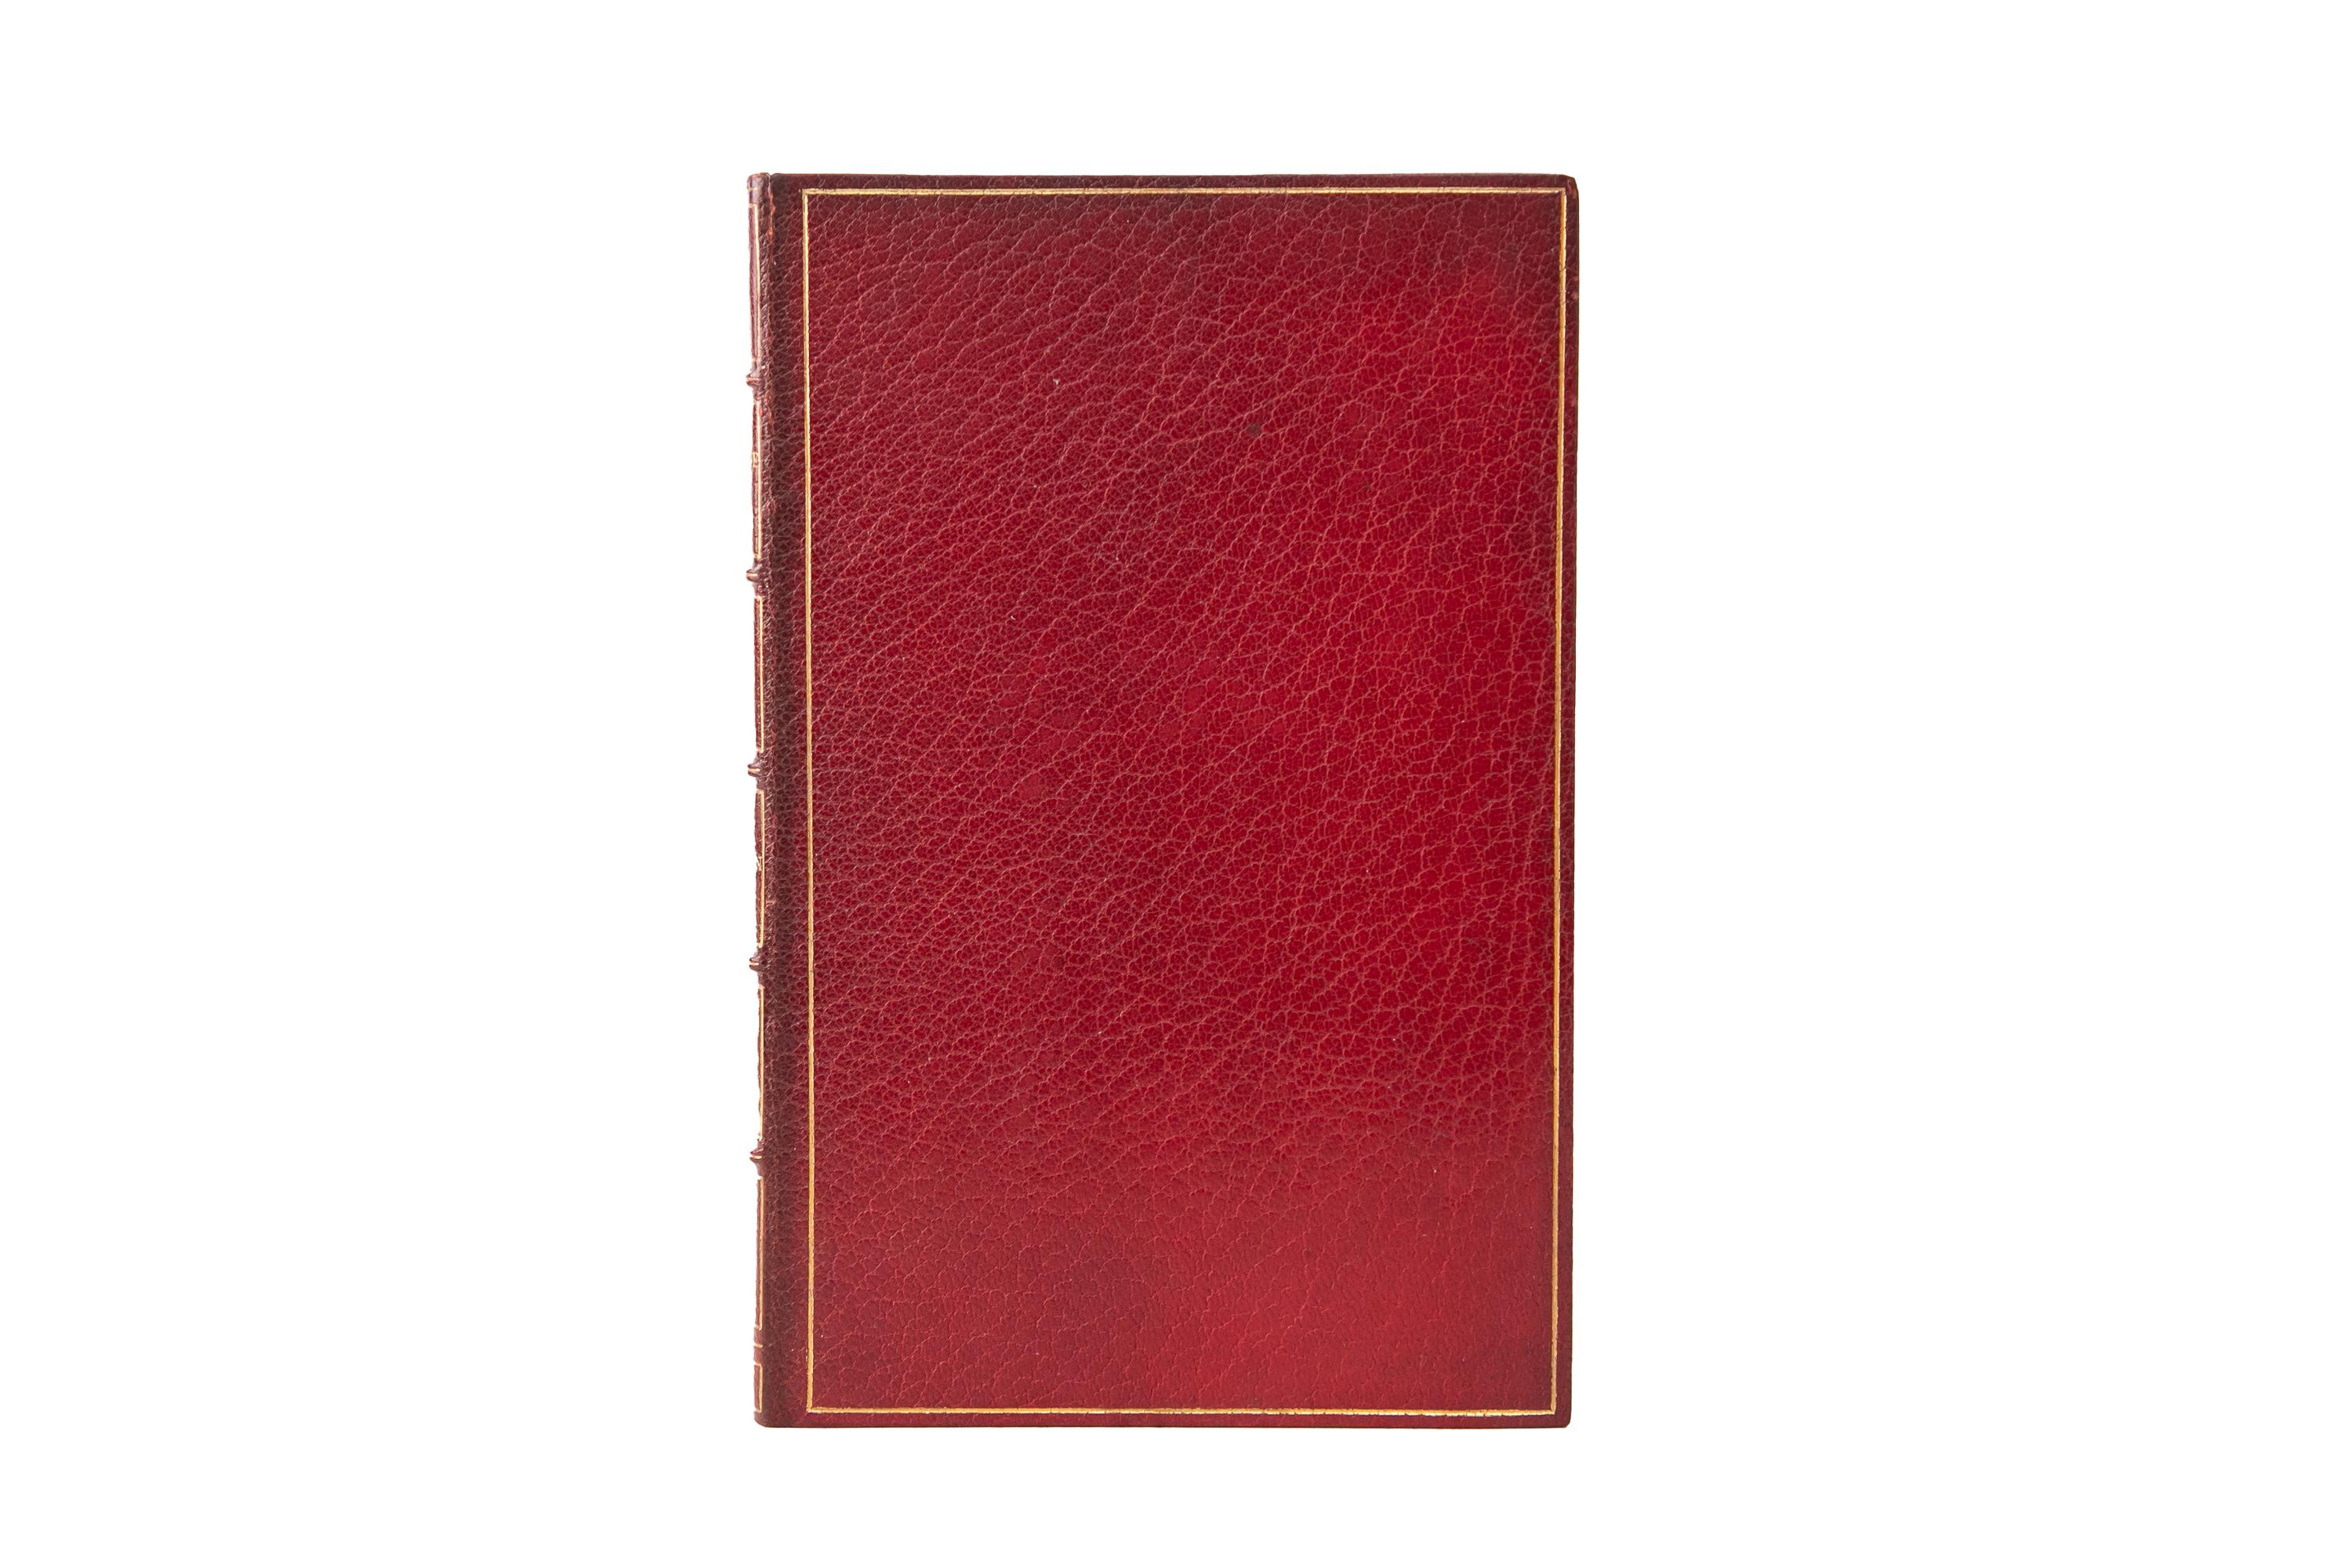 1 Volume. Charles Eliot Norton, The New Life of Dante Alighieri. Reliure en plein maroquin rouge, avec une bordure dorée sur la couverture. Le dos présente des bandes en relief et des détails dorés. Le bord supérieur est doré avec des dentelles